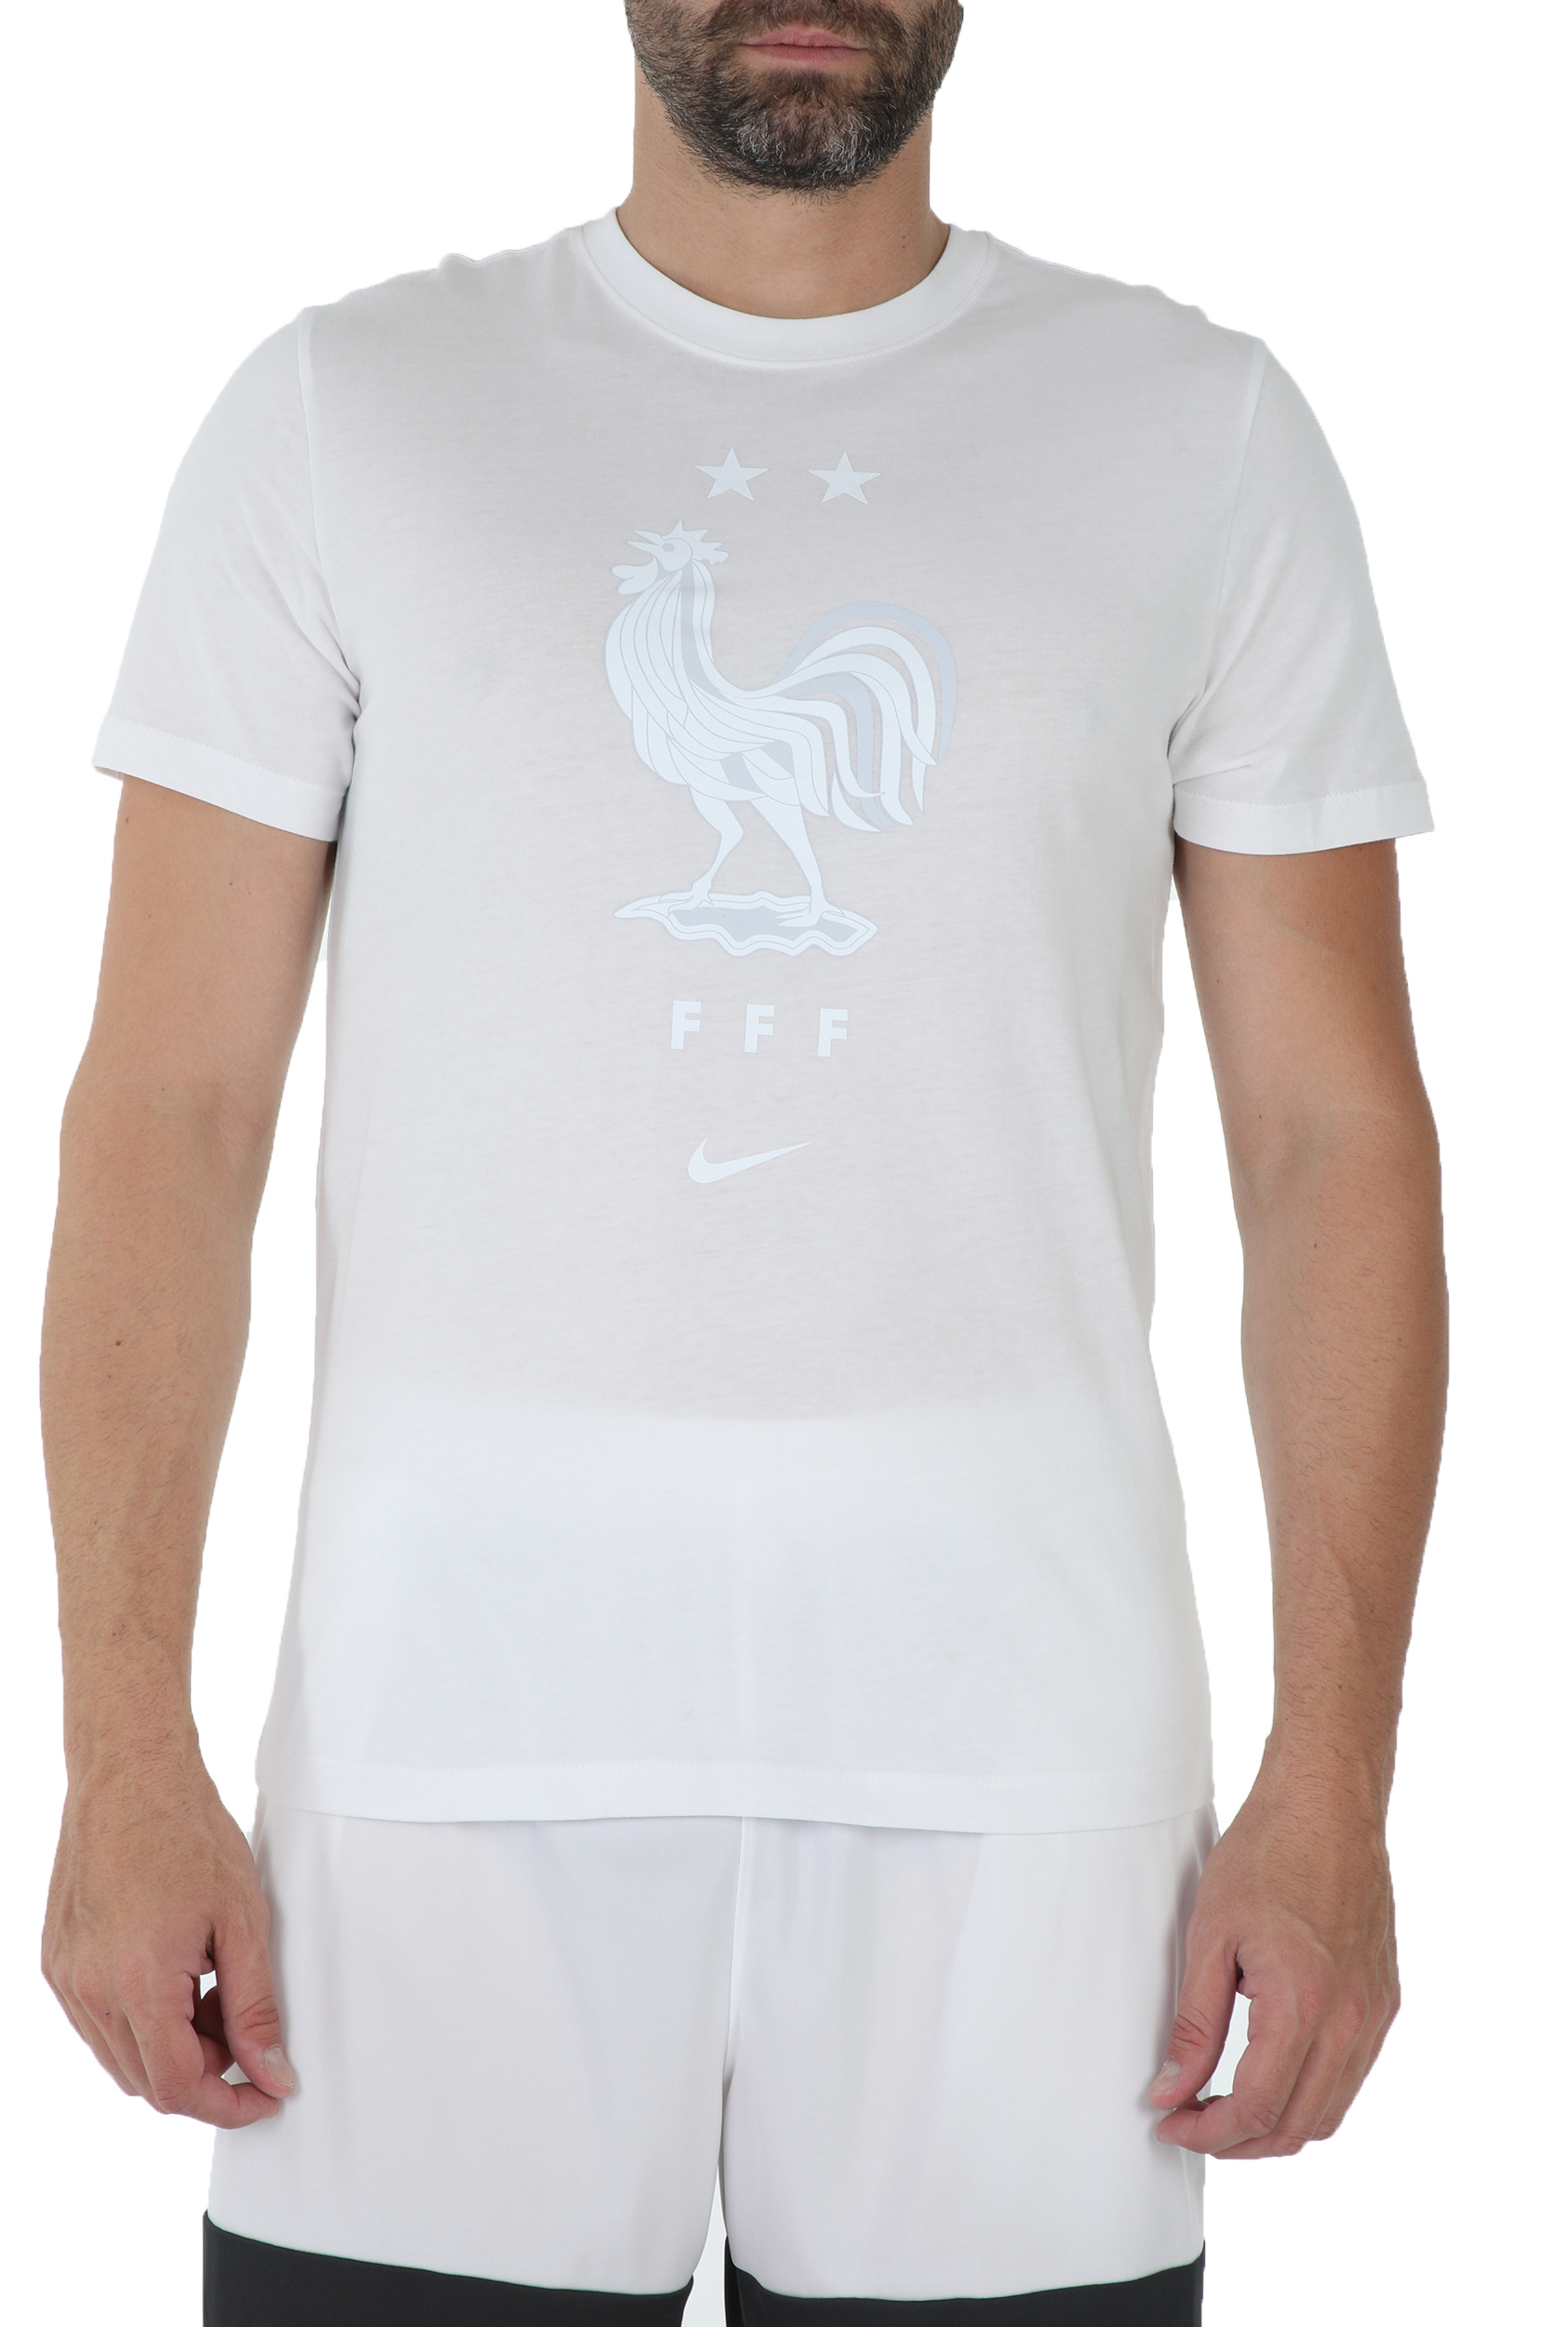 Ανδρικά/Ρούχα/Αθλητικά/T-shirt NIKE - Ανδρική κοντομάνικη μπλούζα NIKE EVERGREEN CREST λευκή